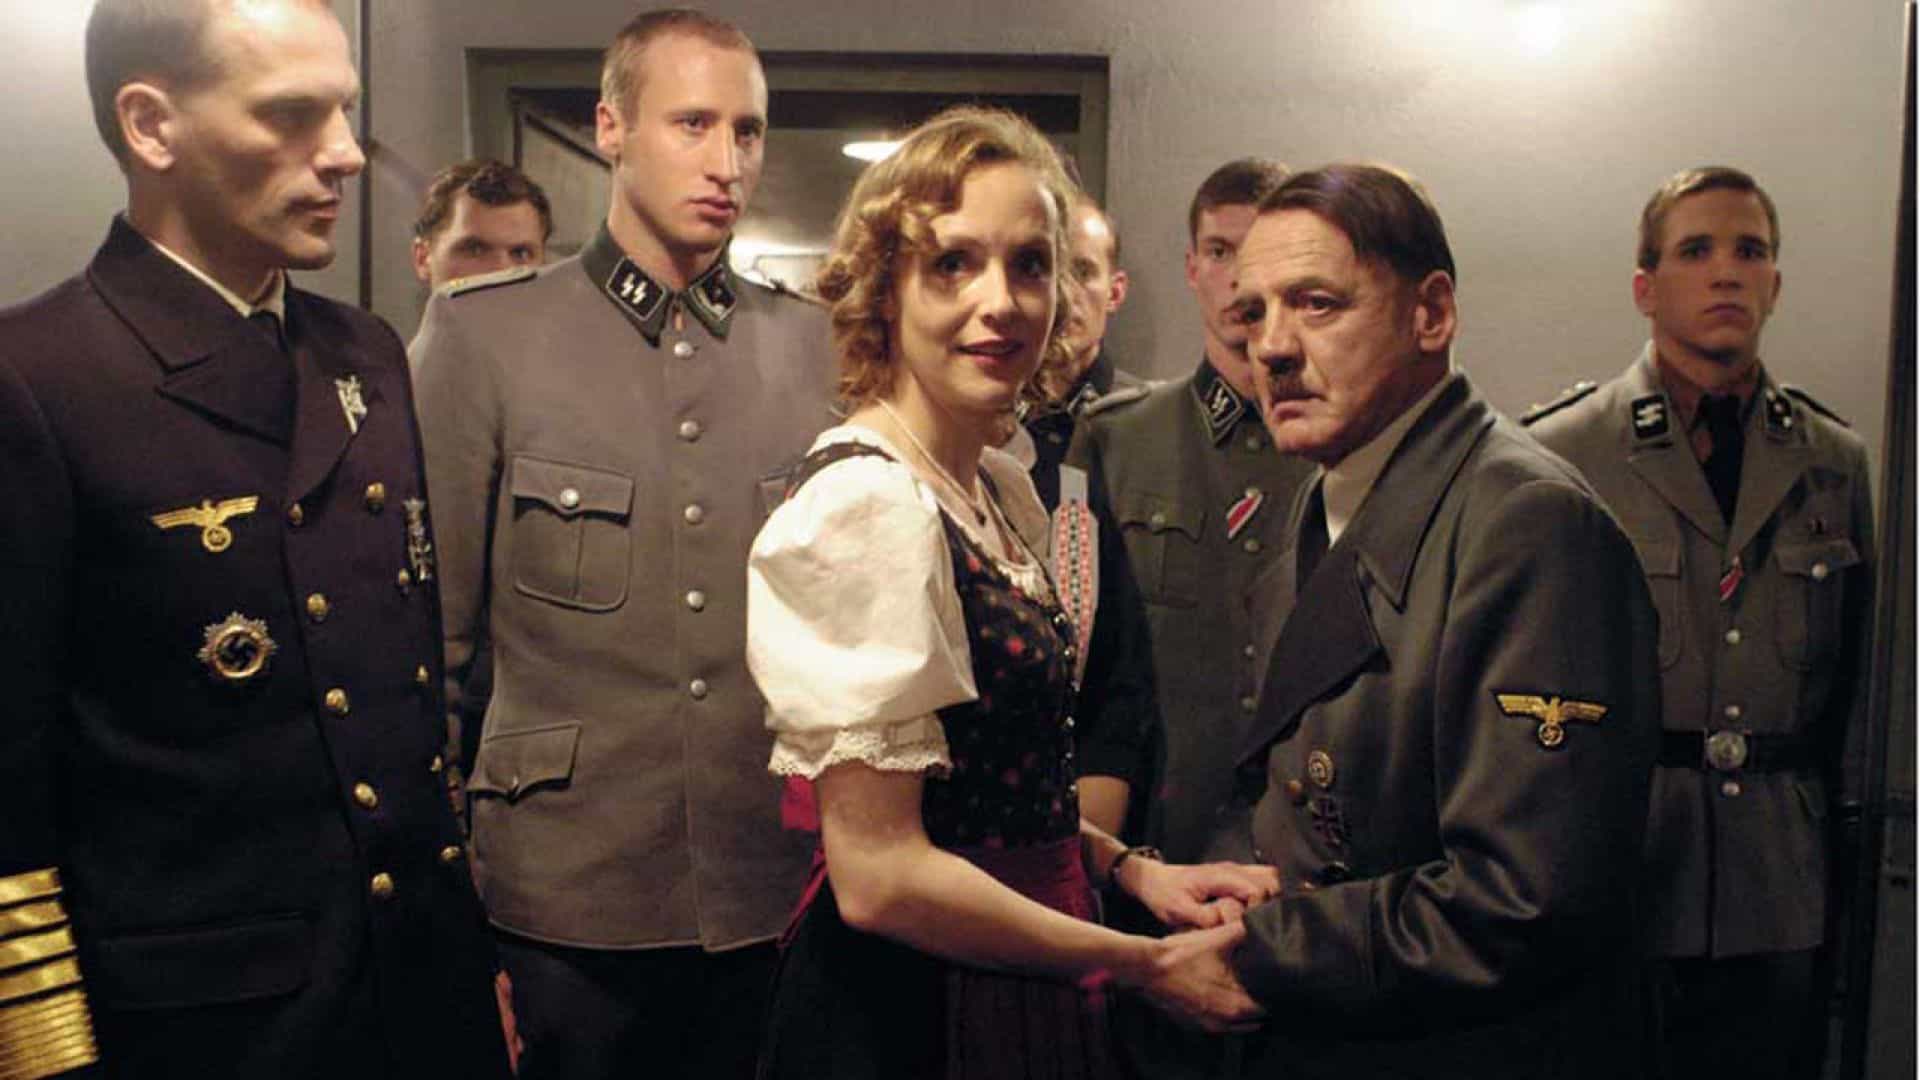 La Caduta - Gli ultimi giorni di Hitler